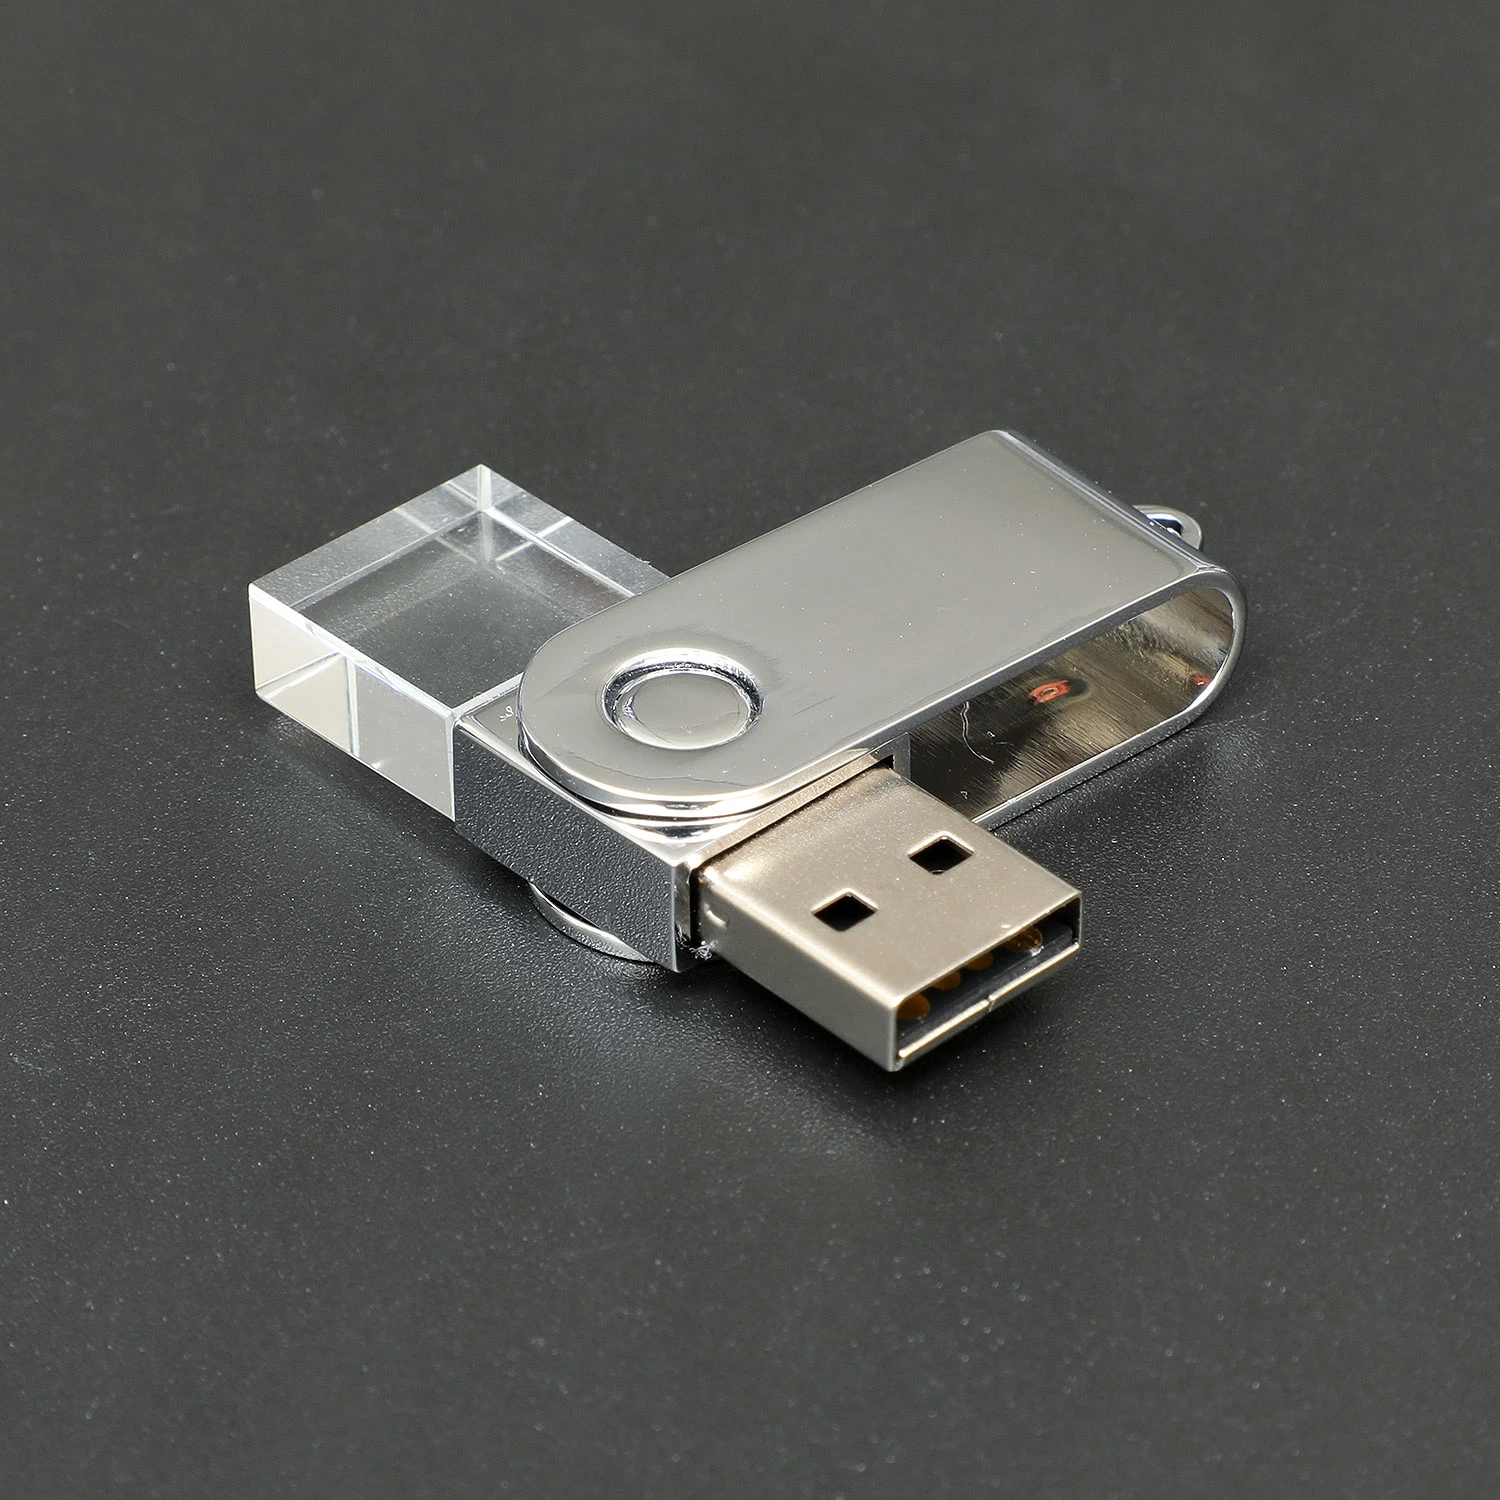 LOGO IMPRESSION À CRISTAUX de LUMIÈRE LED USB Pen Drive Flash Disk Clé USB